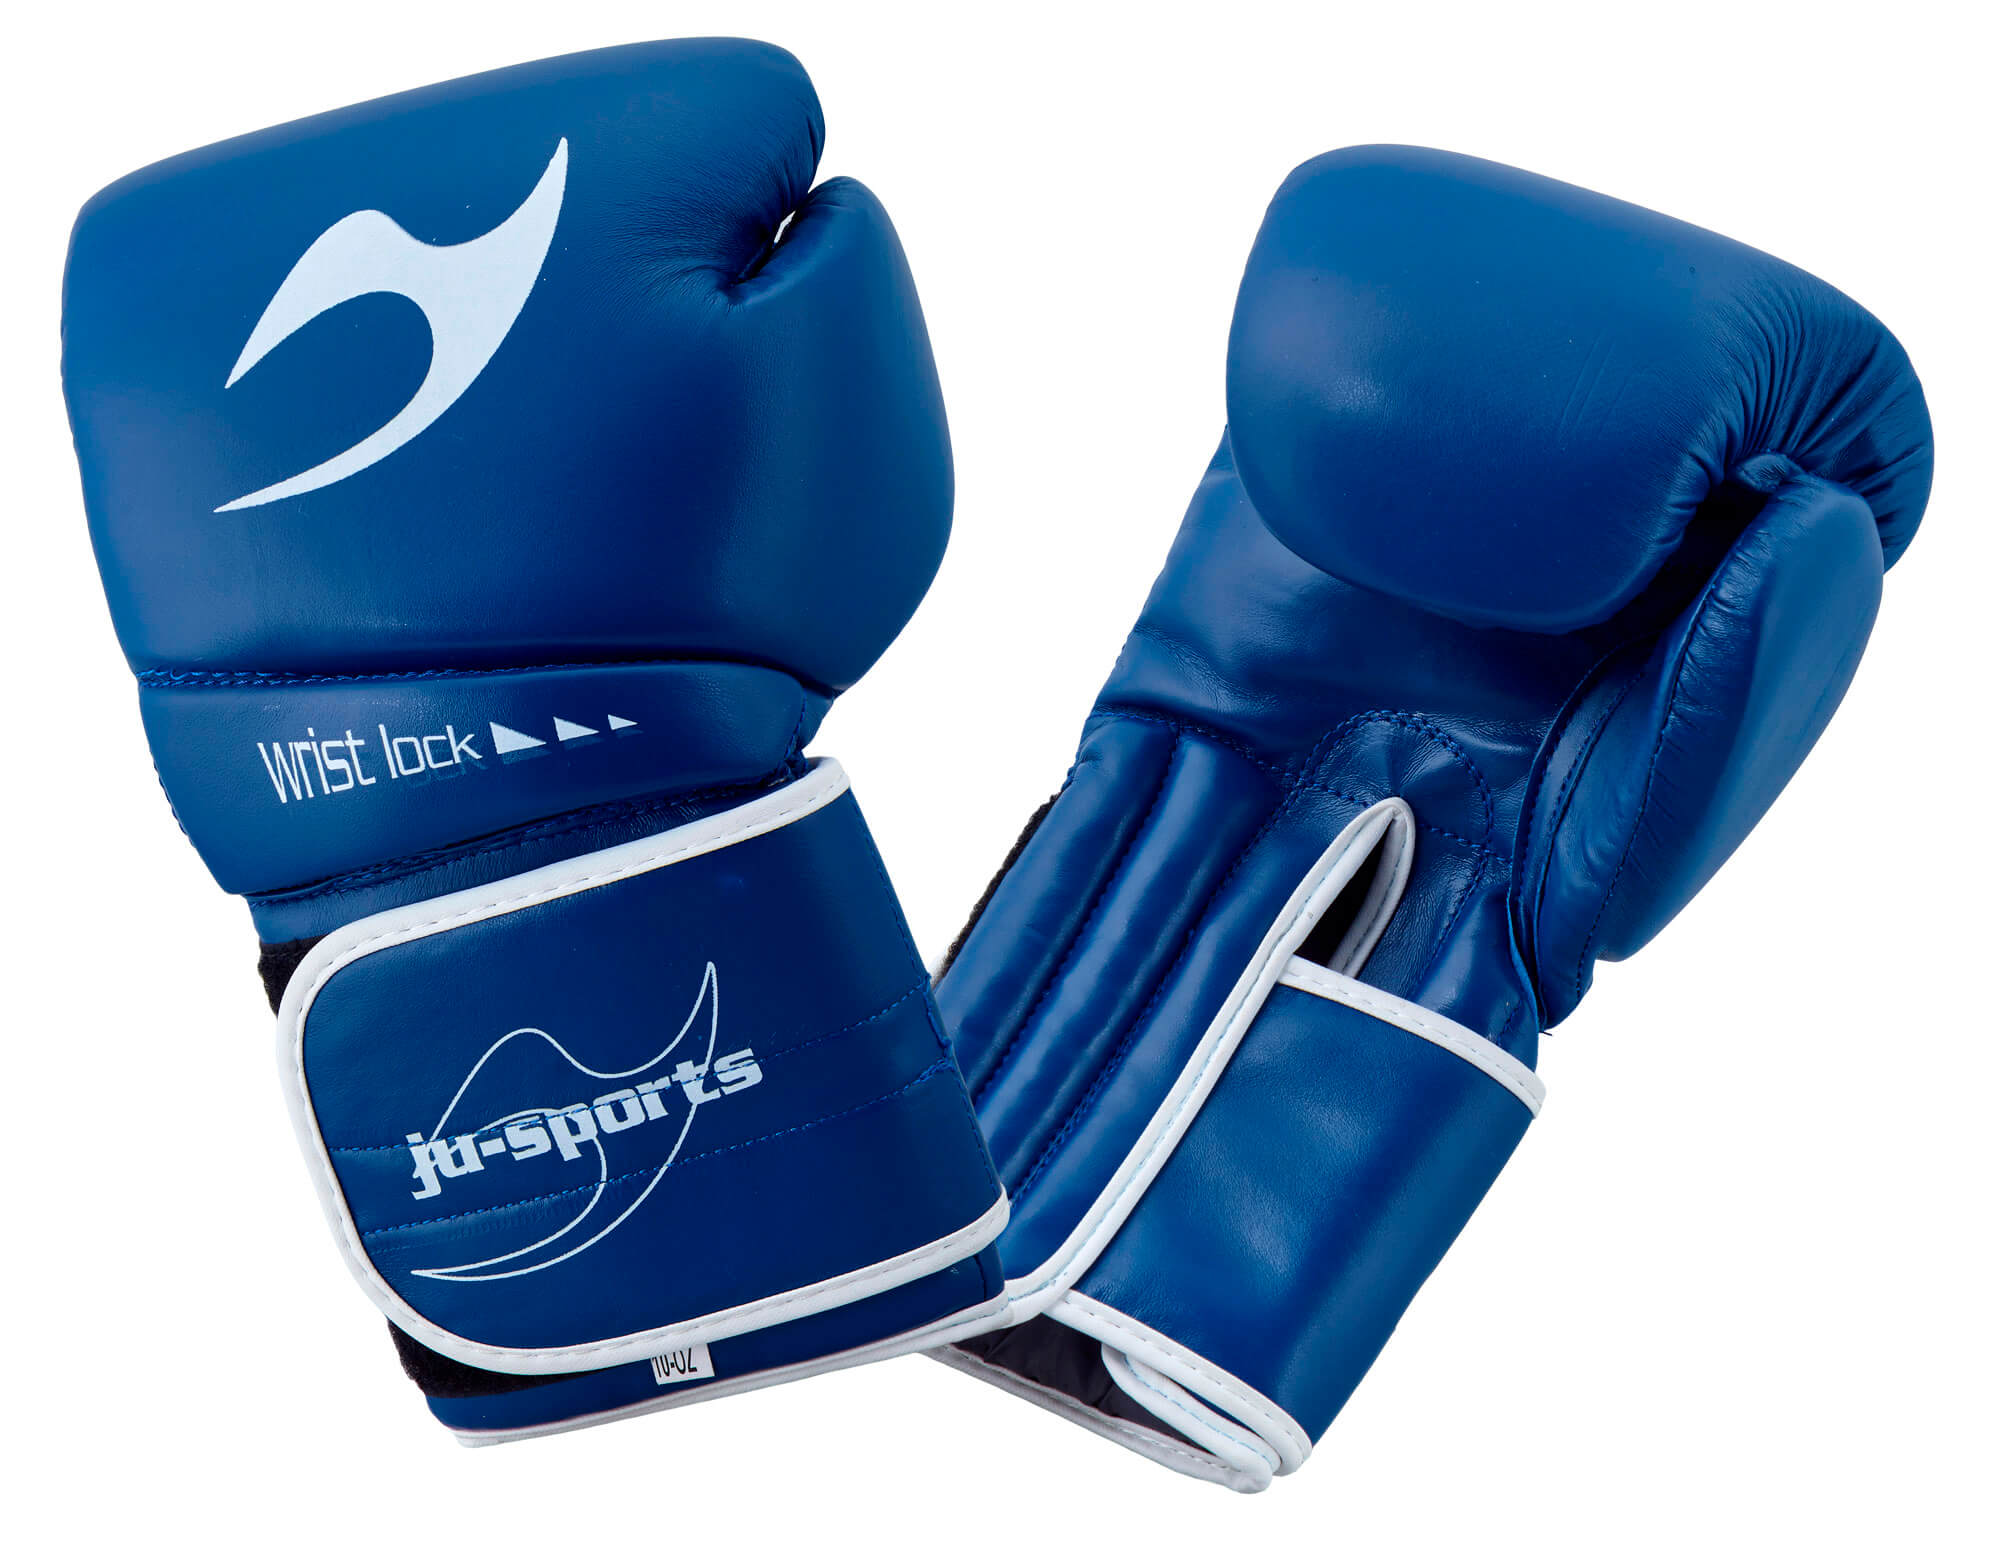 Ju-Sports Boxing Gloves C16 Competitor Pro PU blue 10 oz